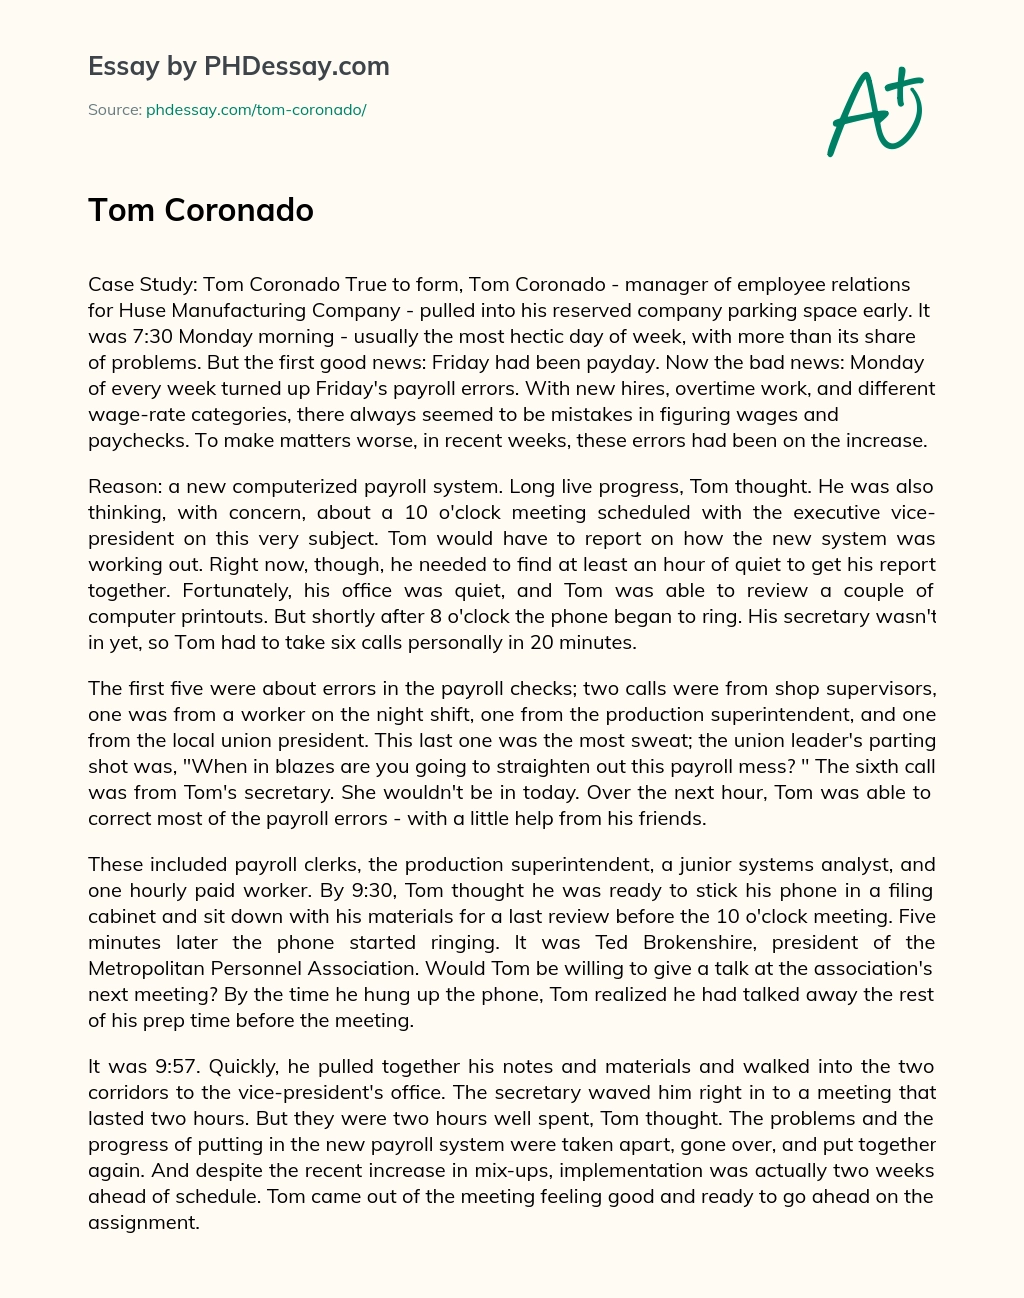 Tom Coronado essay